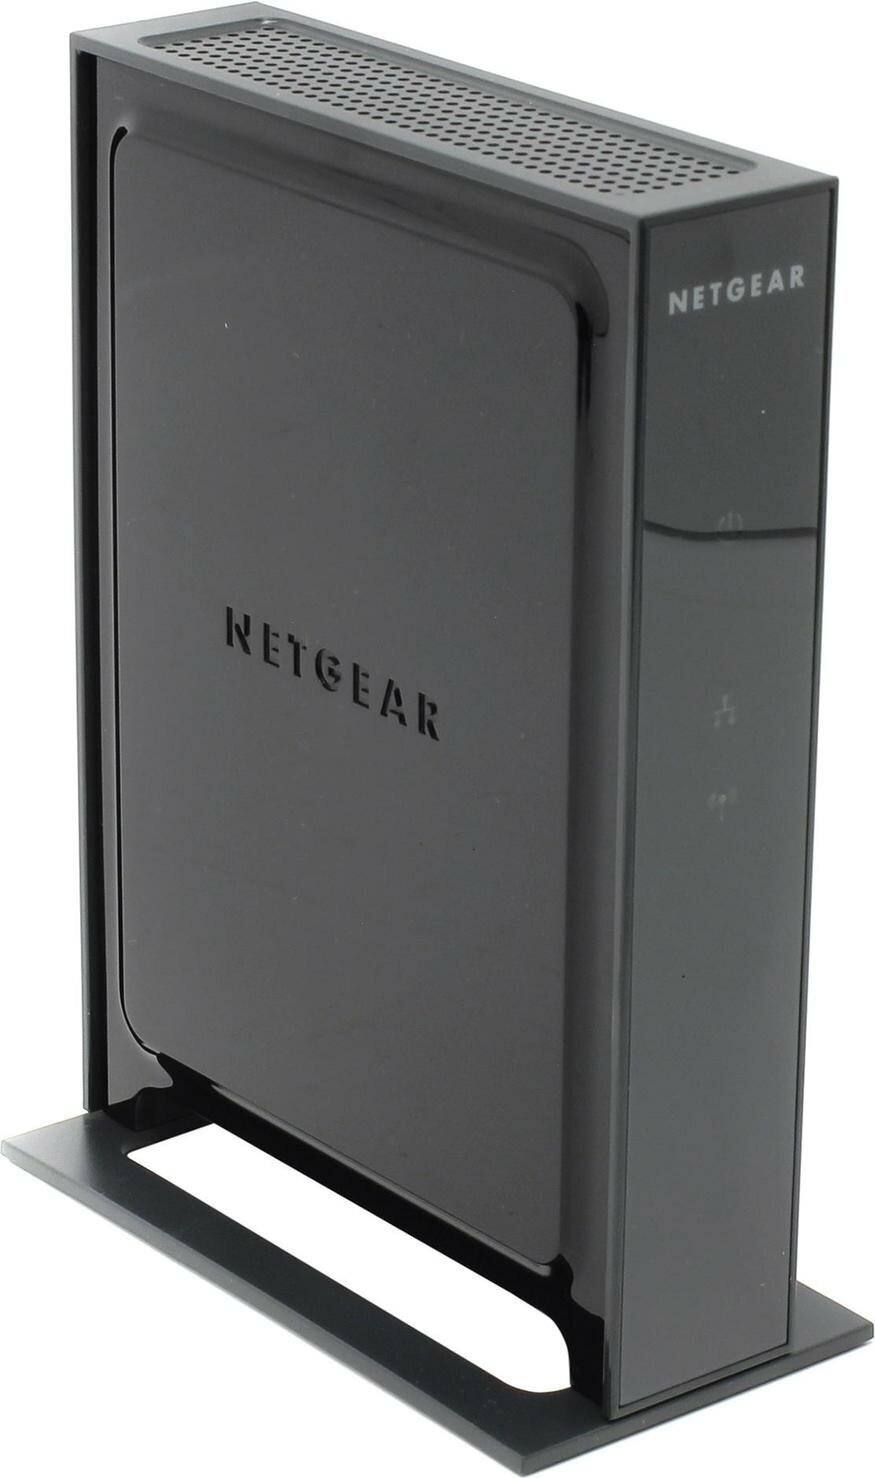 Беспроводная точка доступа NETGEAR WN802T-200PES 802.11n 300 Mbps (1 LAN 10/100/1000 Mbps port) v2